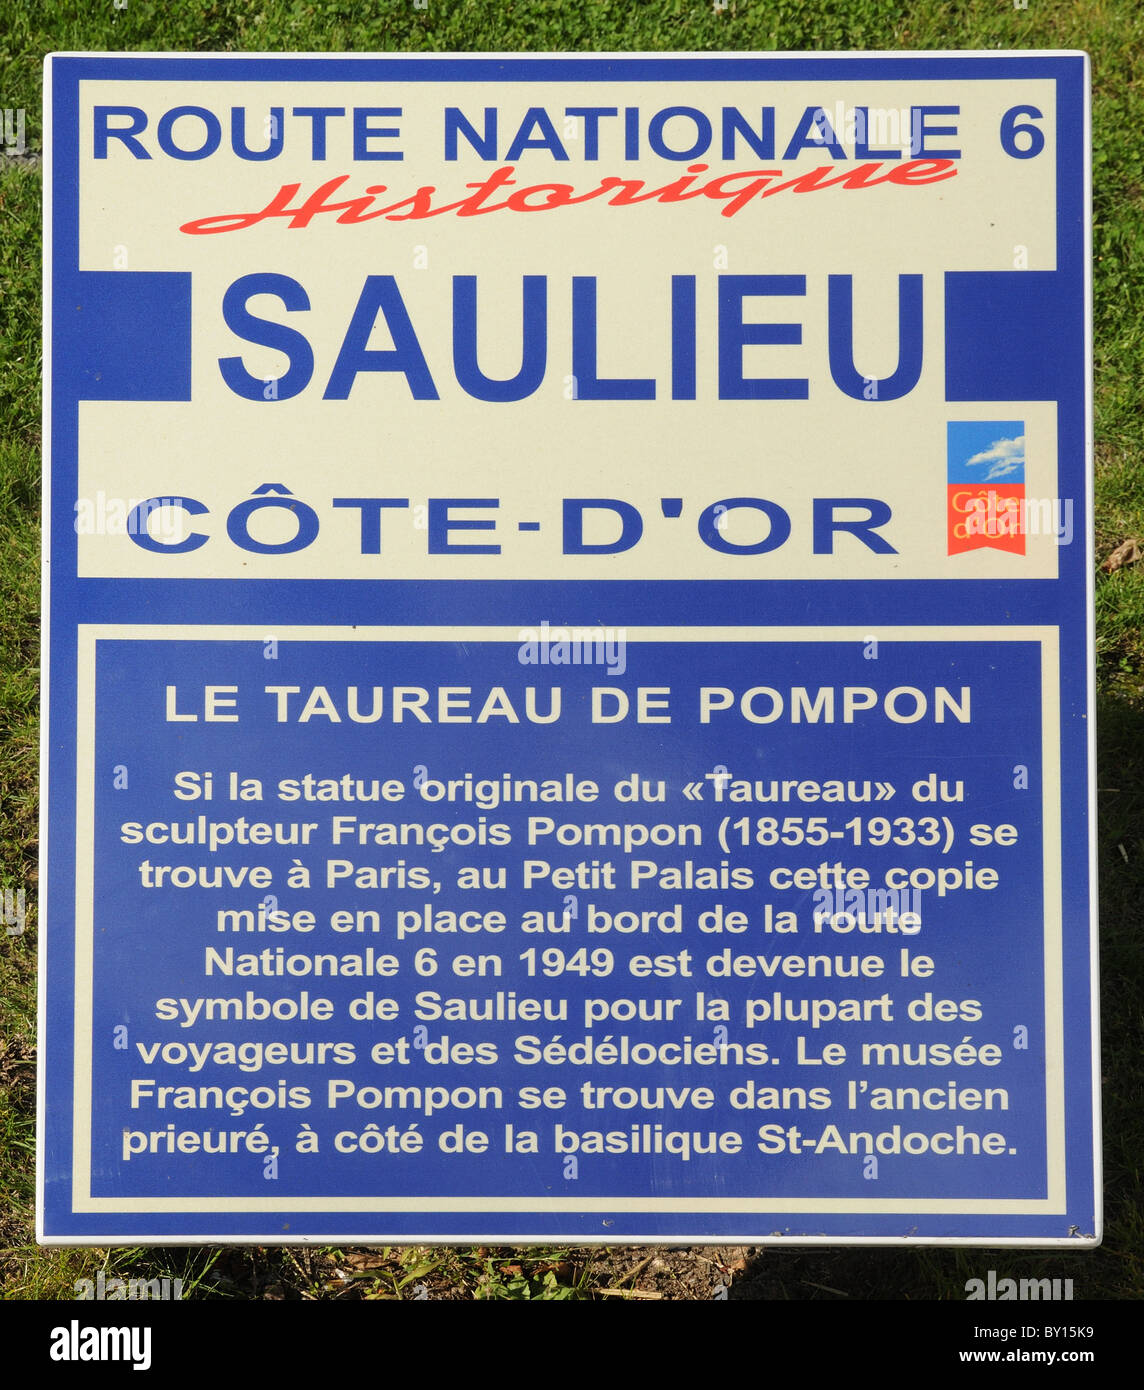 Route nationale N6 historischen Zeichen in Saulieu Cote d ' or Frankreich  informieren über Bildhauer Francois Pompon und seinen Bronze Stier  Stockfotografie - Alamy